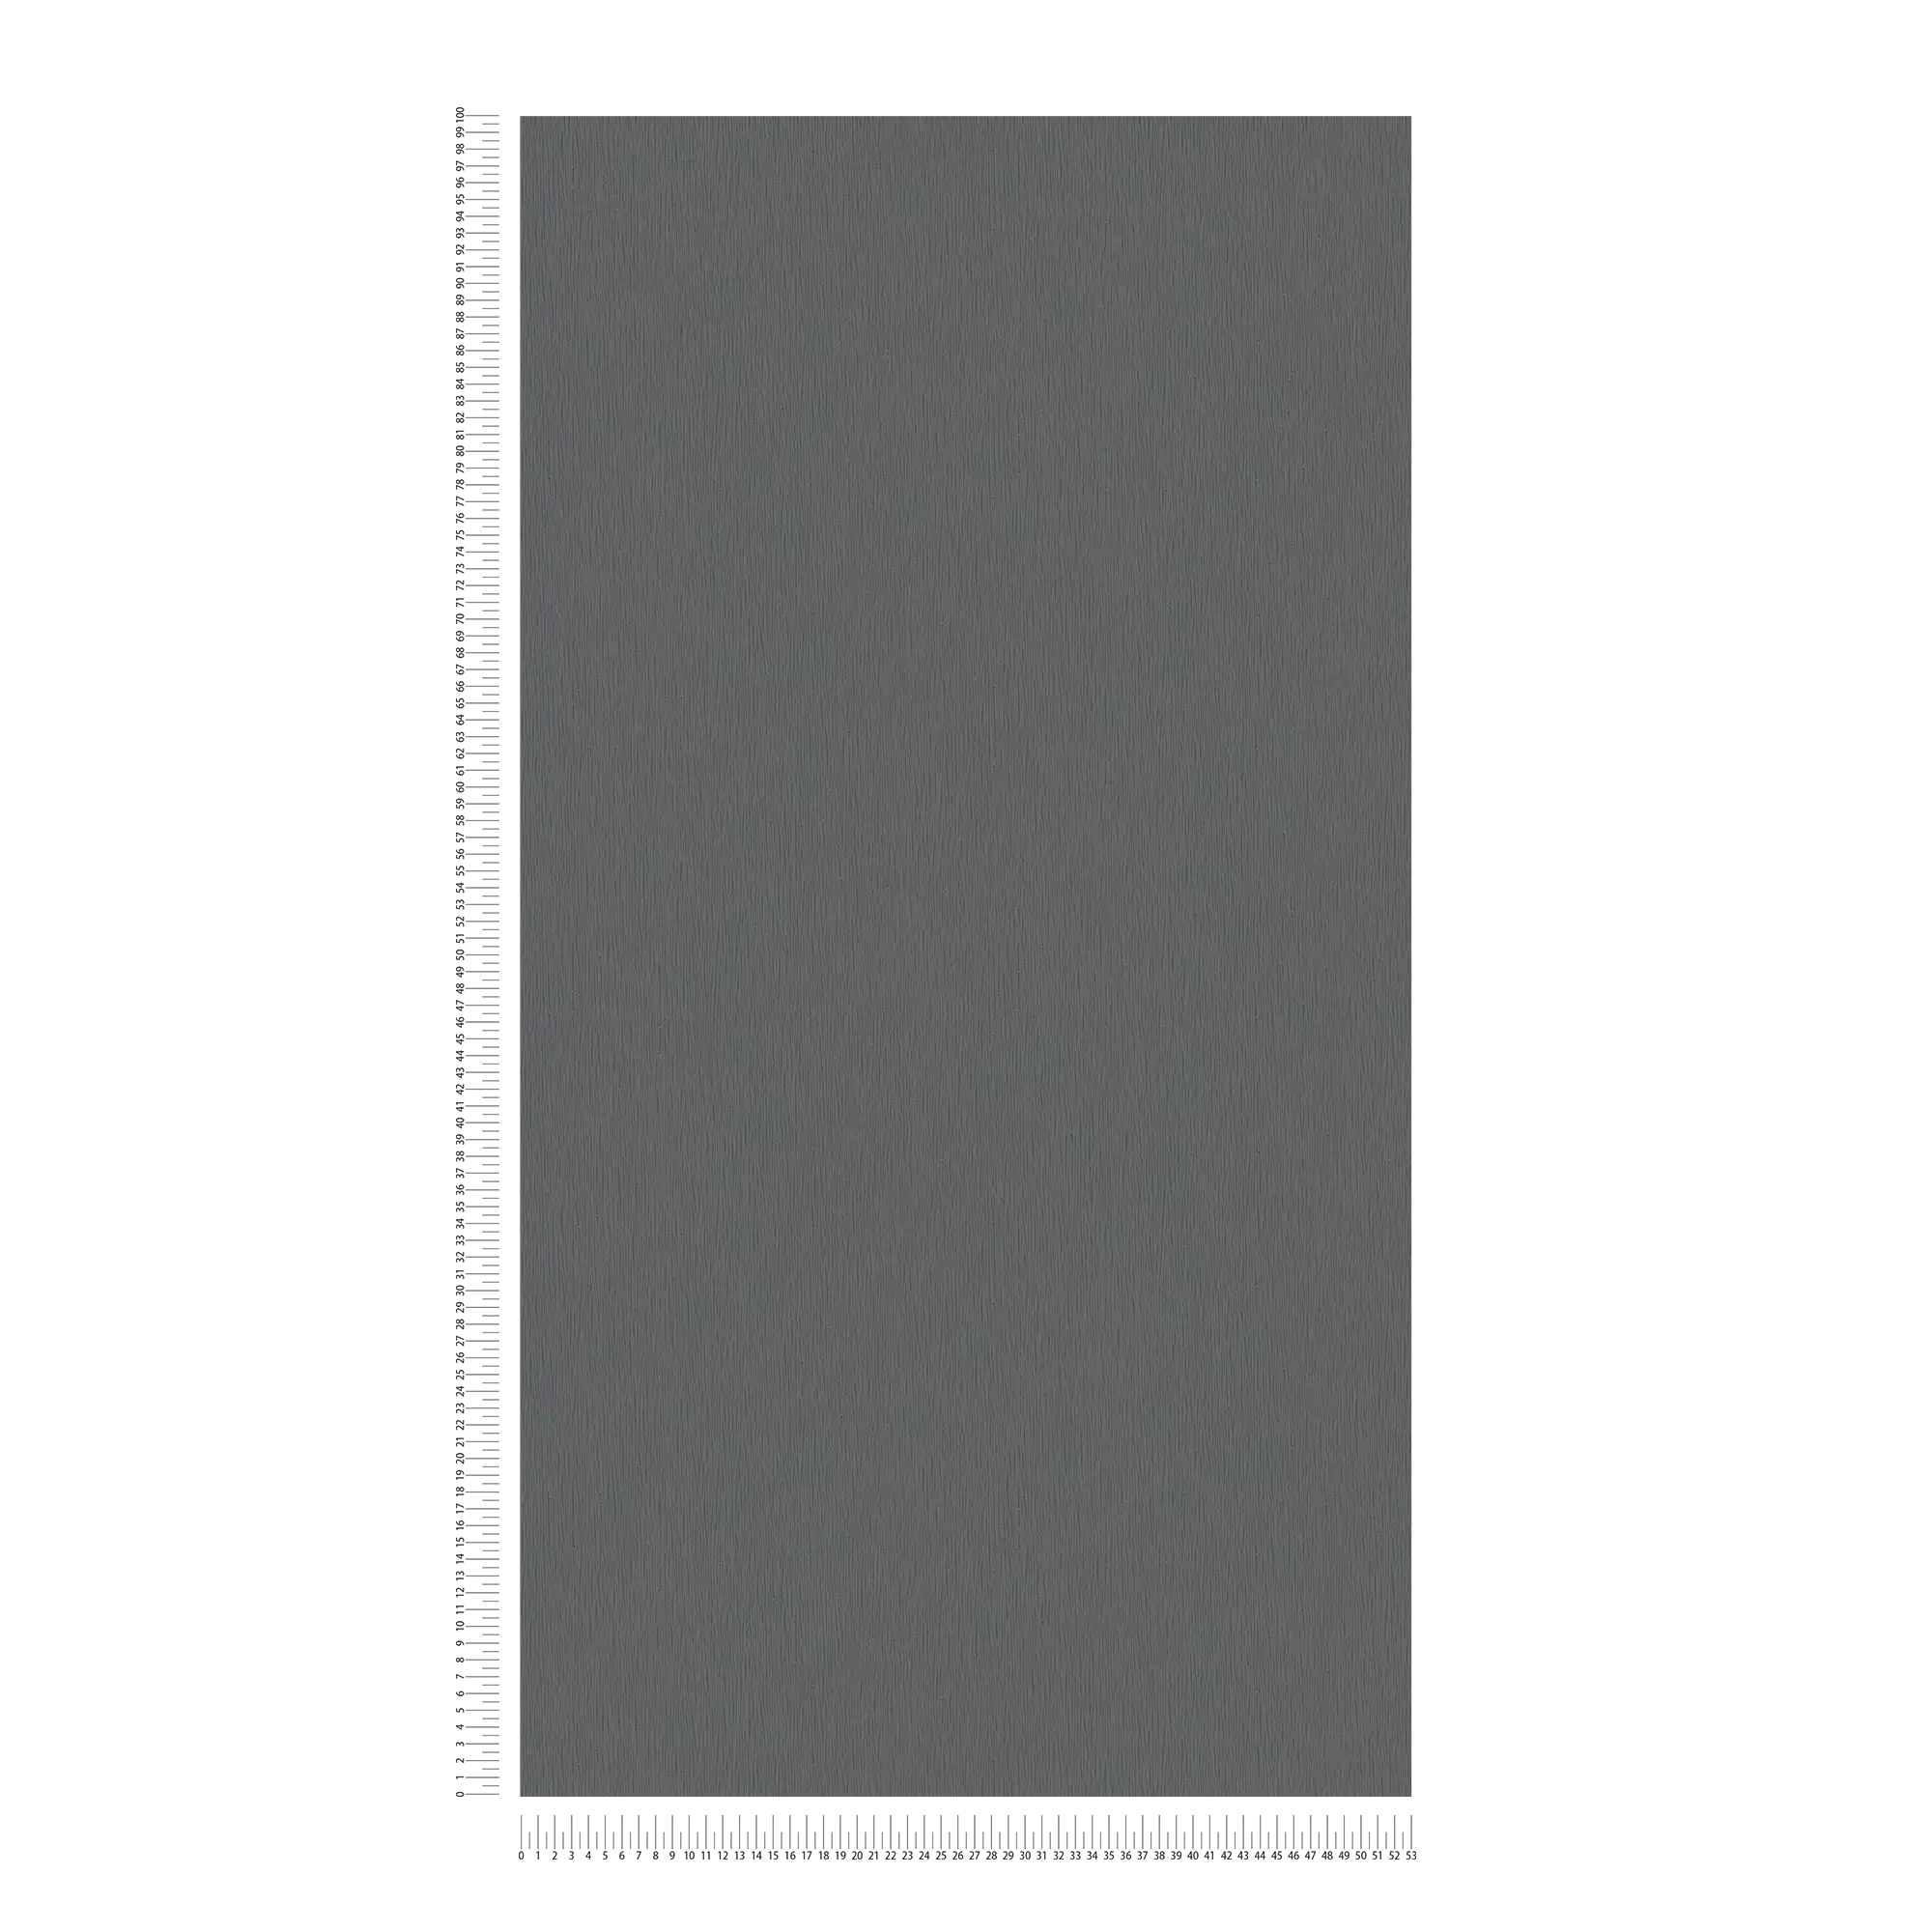             Papel pintado no tejido antracita con textura natural tono sobre tono - metálico, negro
        